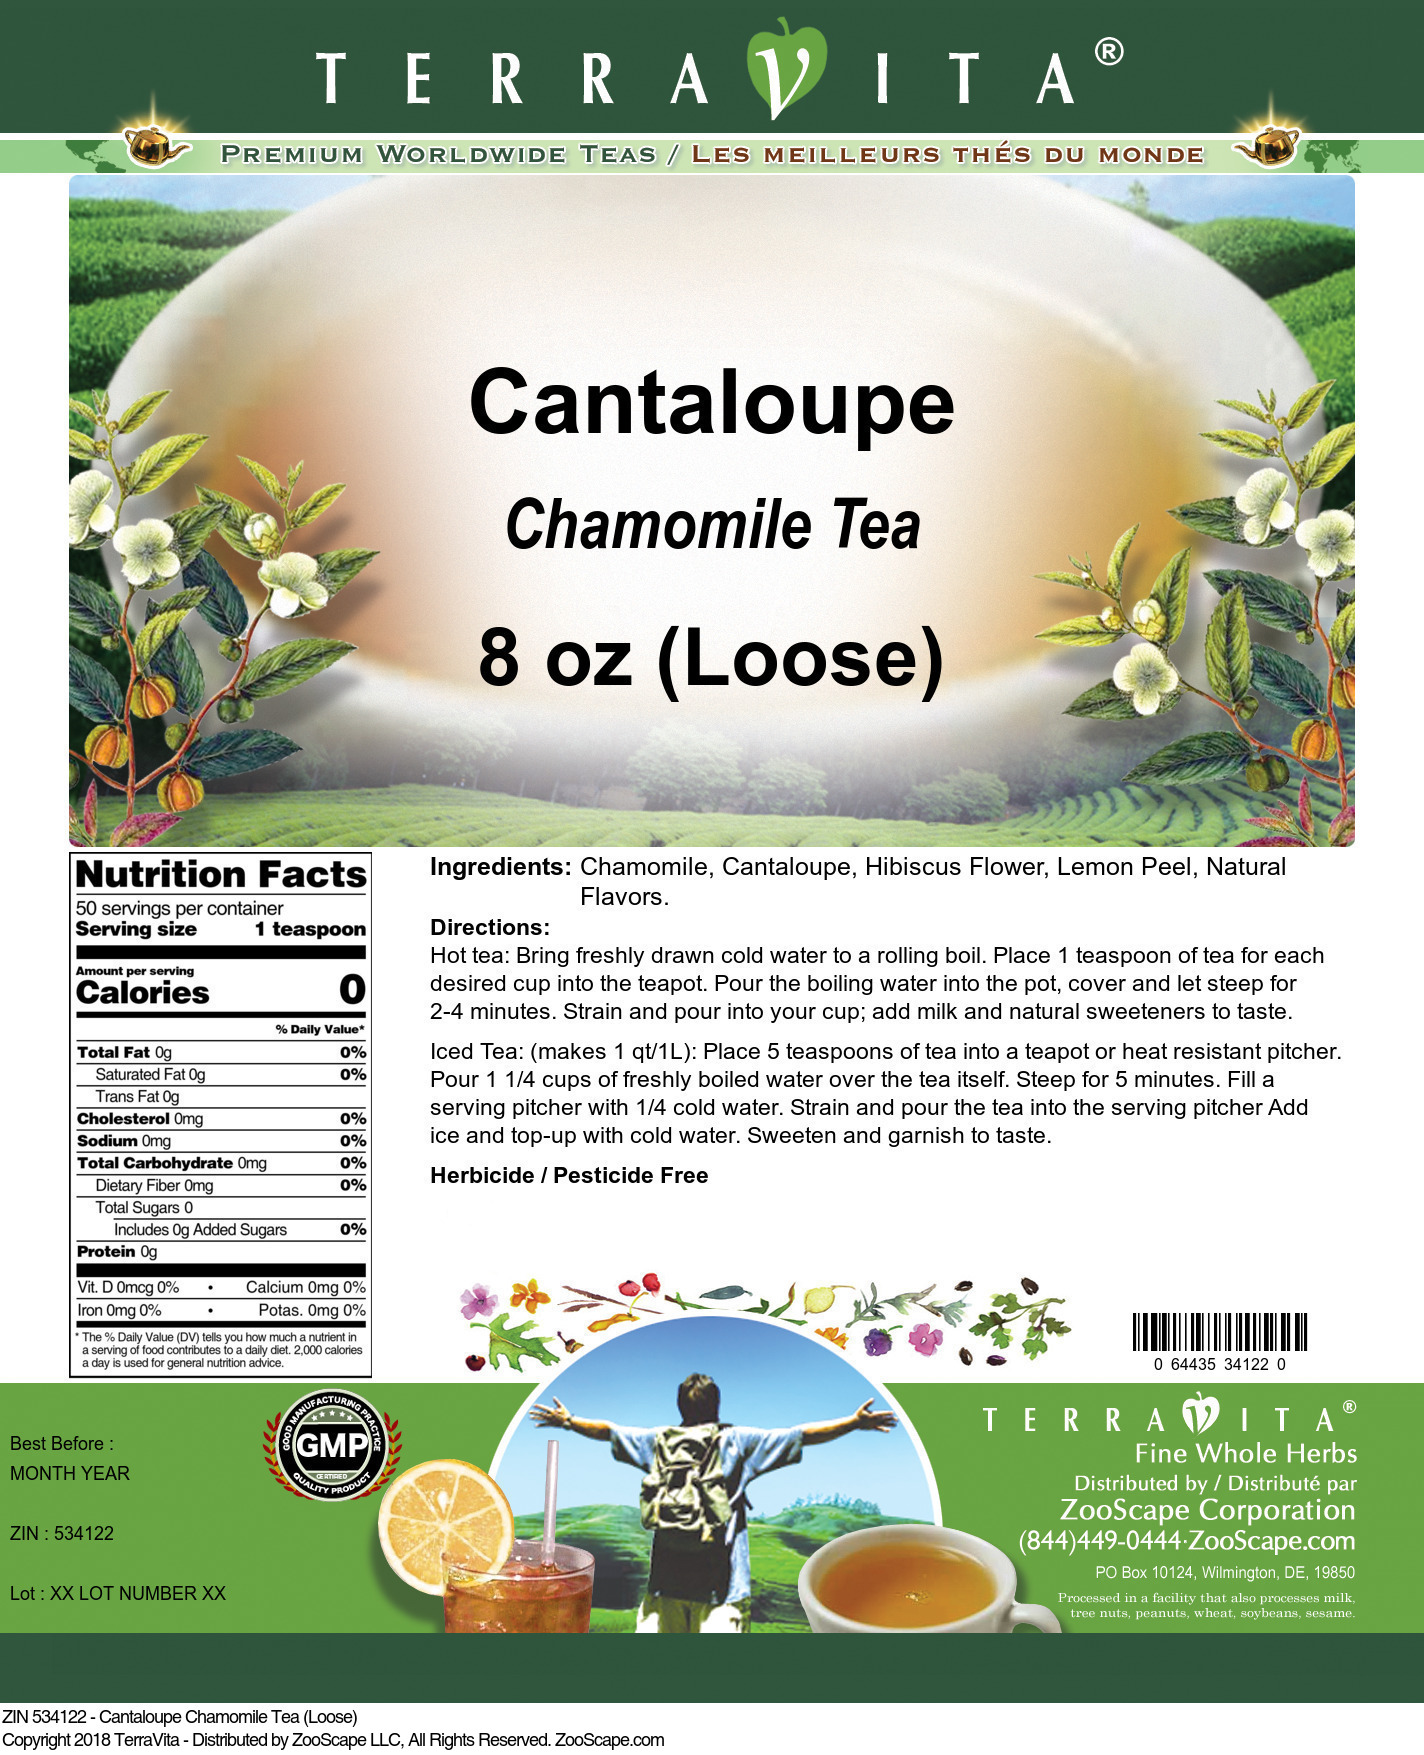 Cantaloupe Chamomile Tea (Loose) - Label